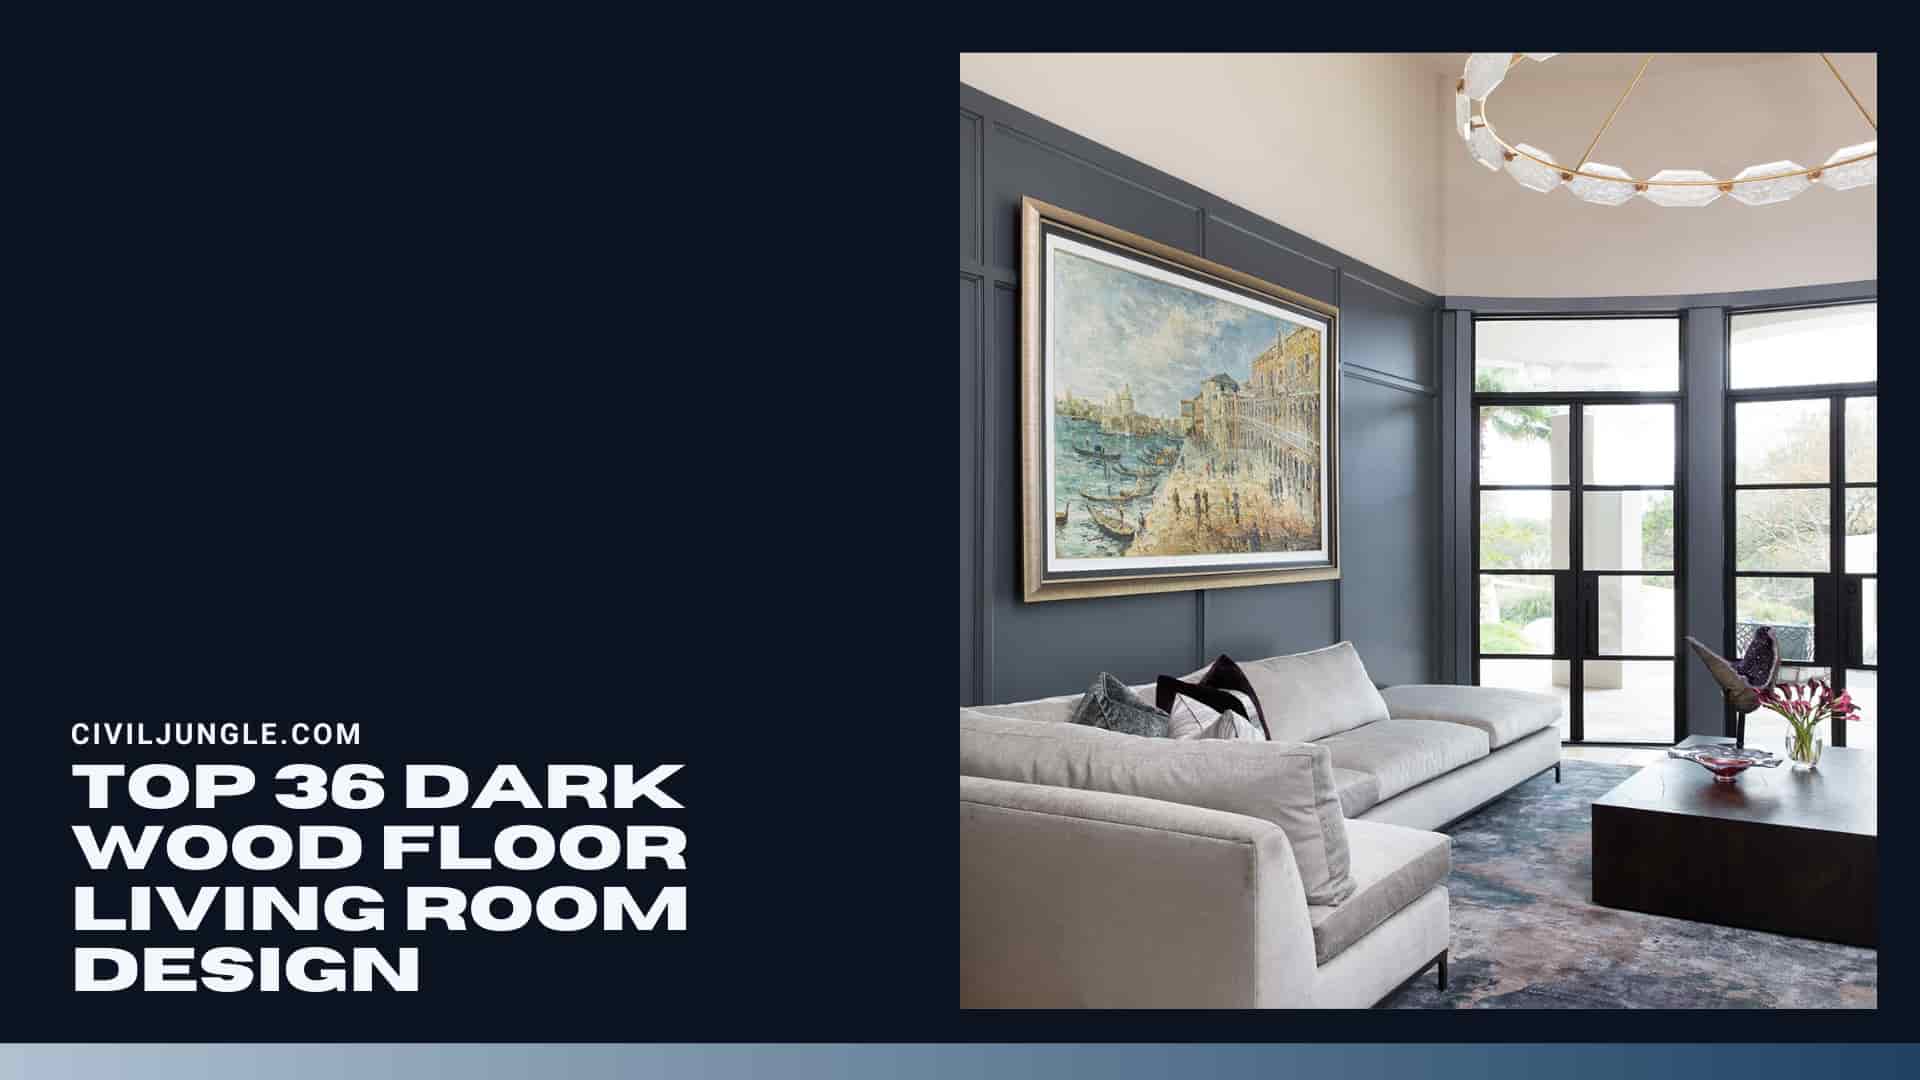 Top 36 Dark Wood Floor Living Room Design